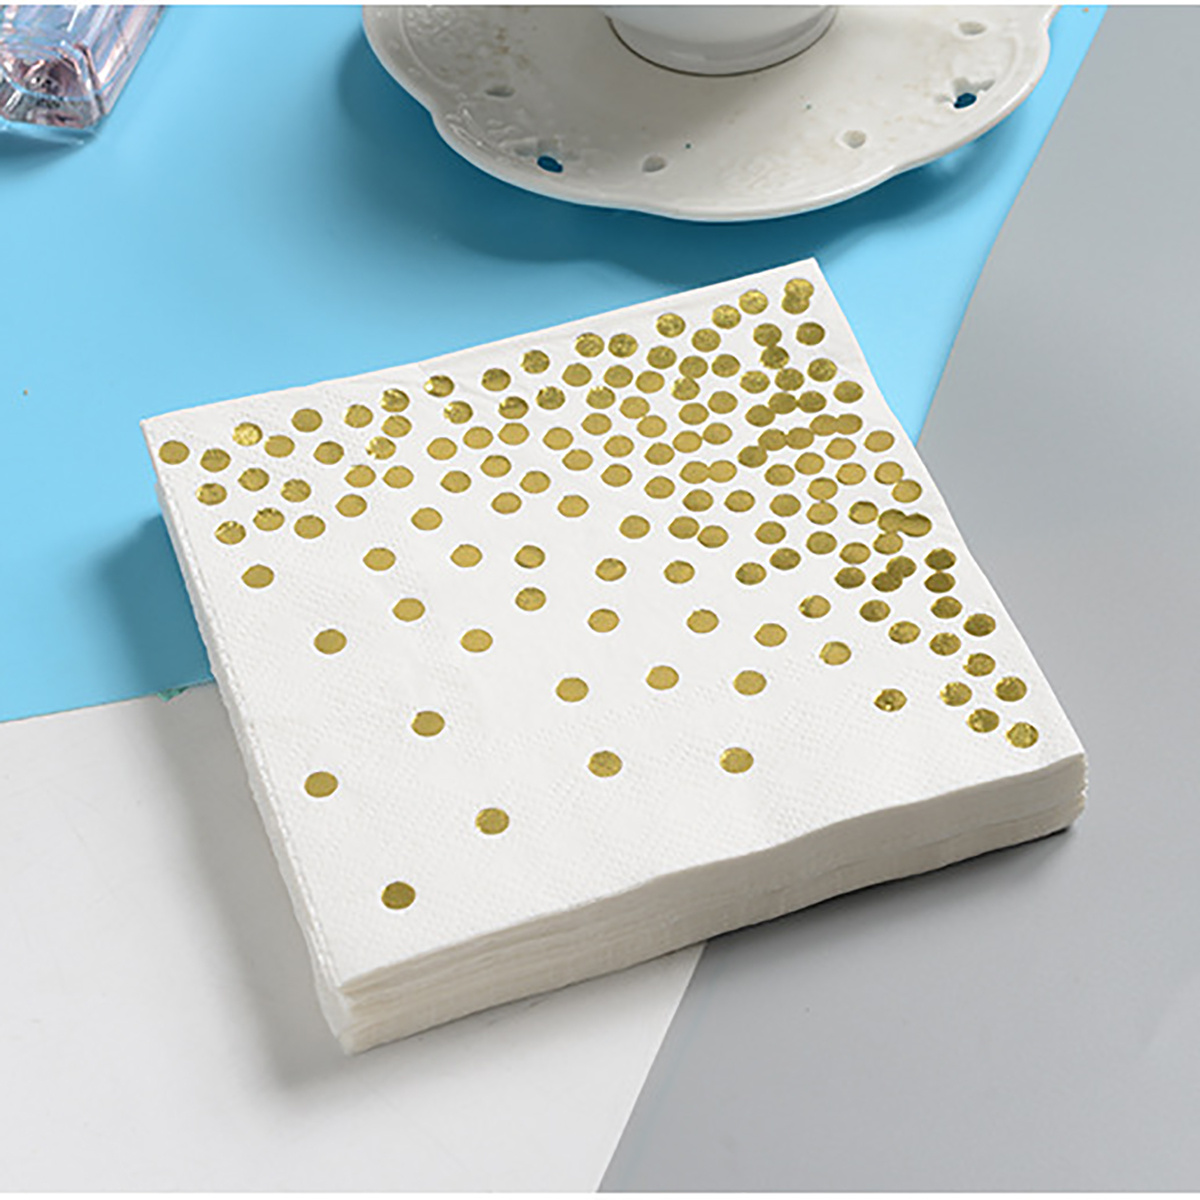 CONRADY - Juego de vajilla desechable de 200 piezas de estrella dorada, 25  platos de papel, platos de postre, vasos de papel, cubiertos de plástico